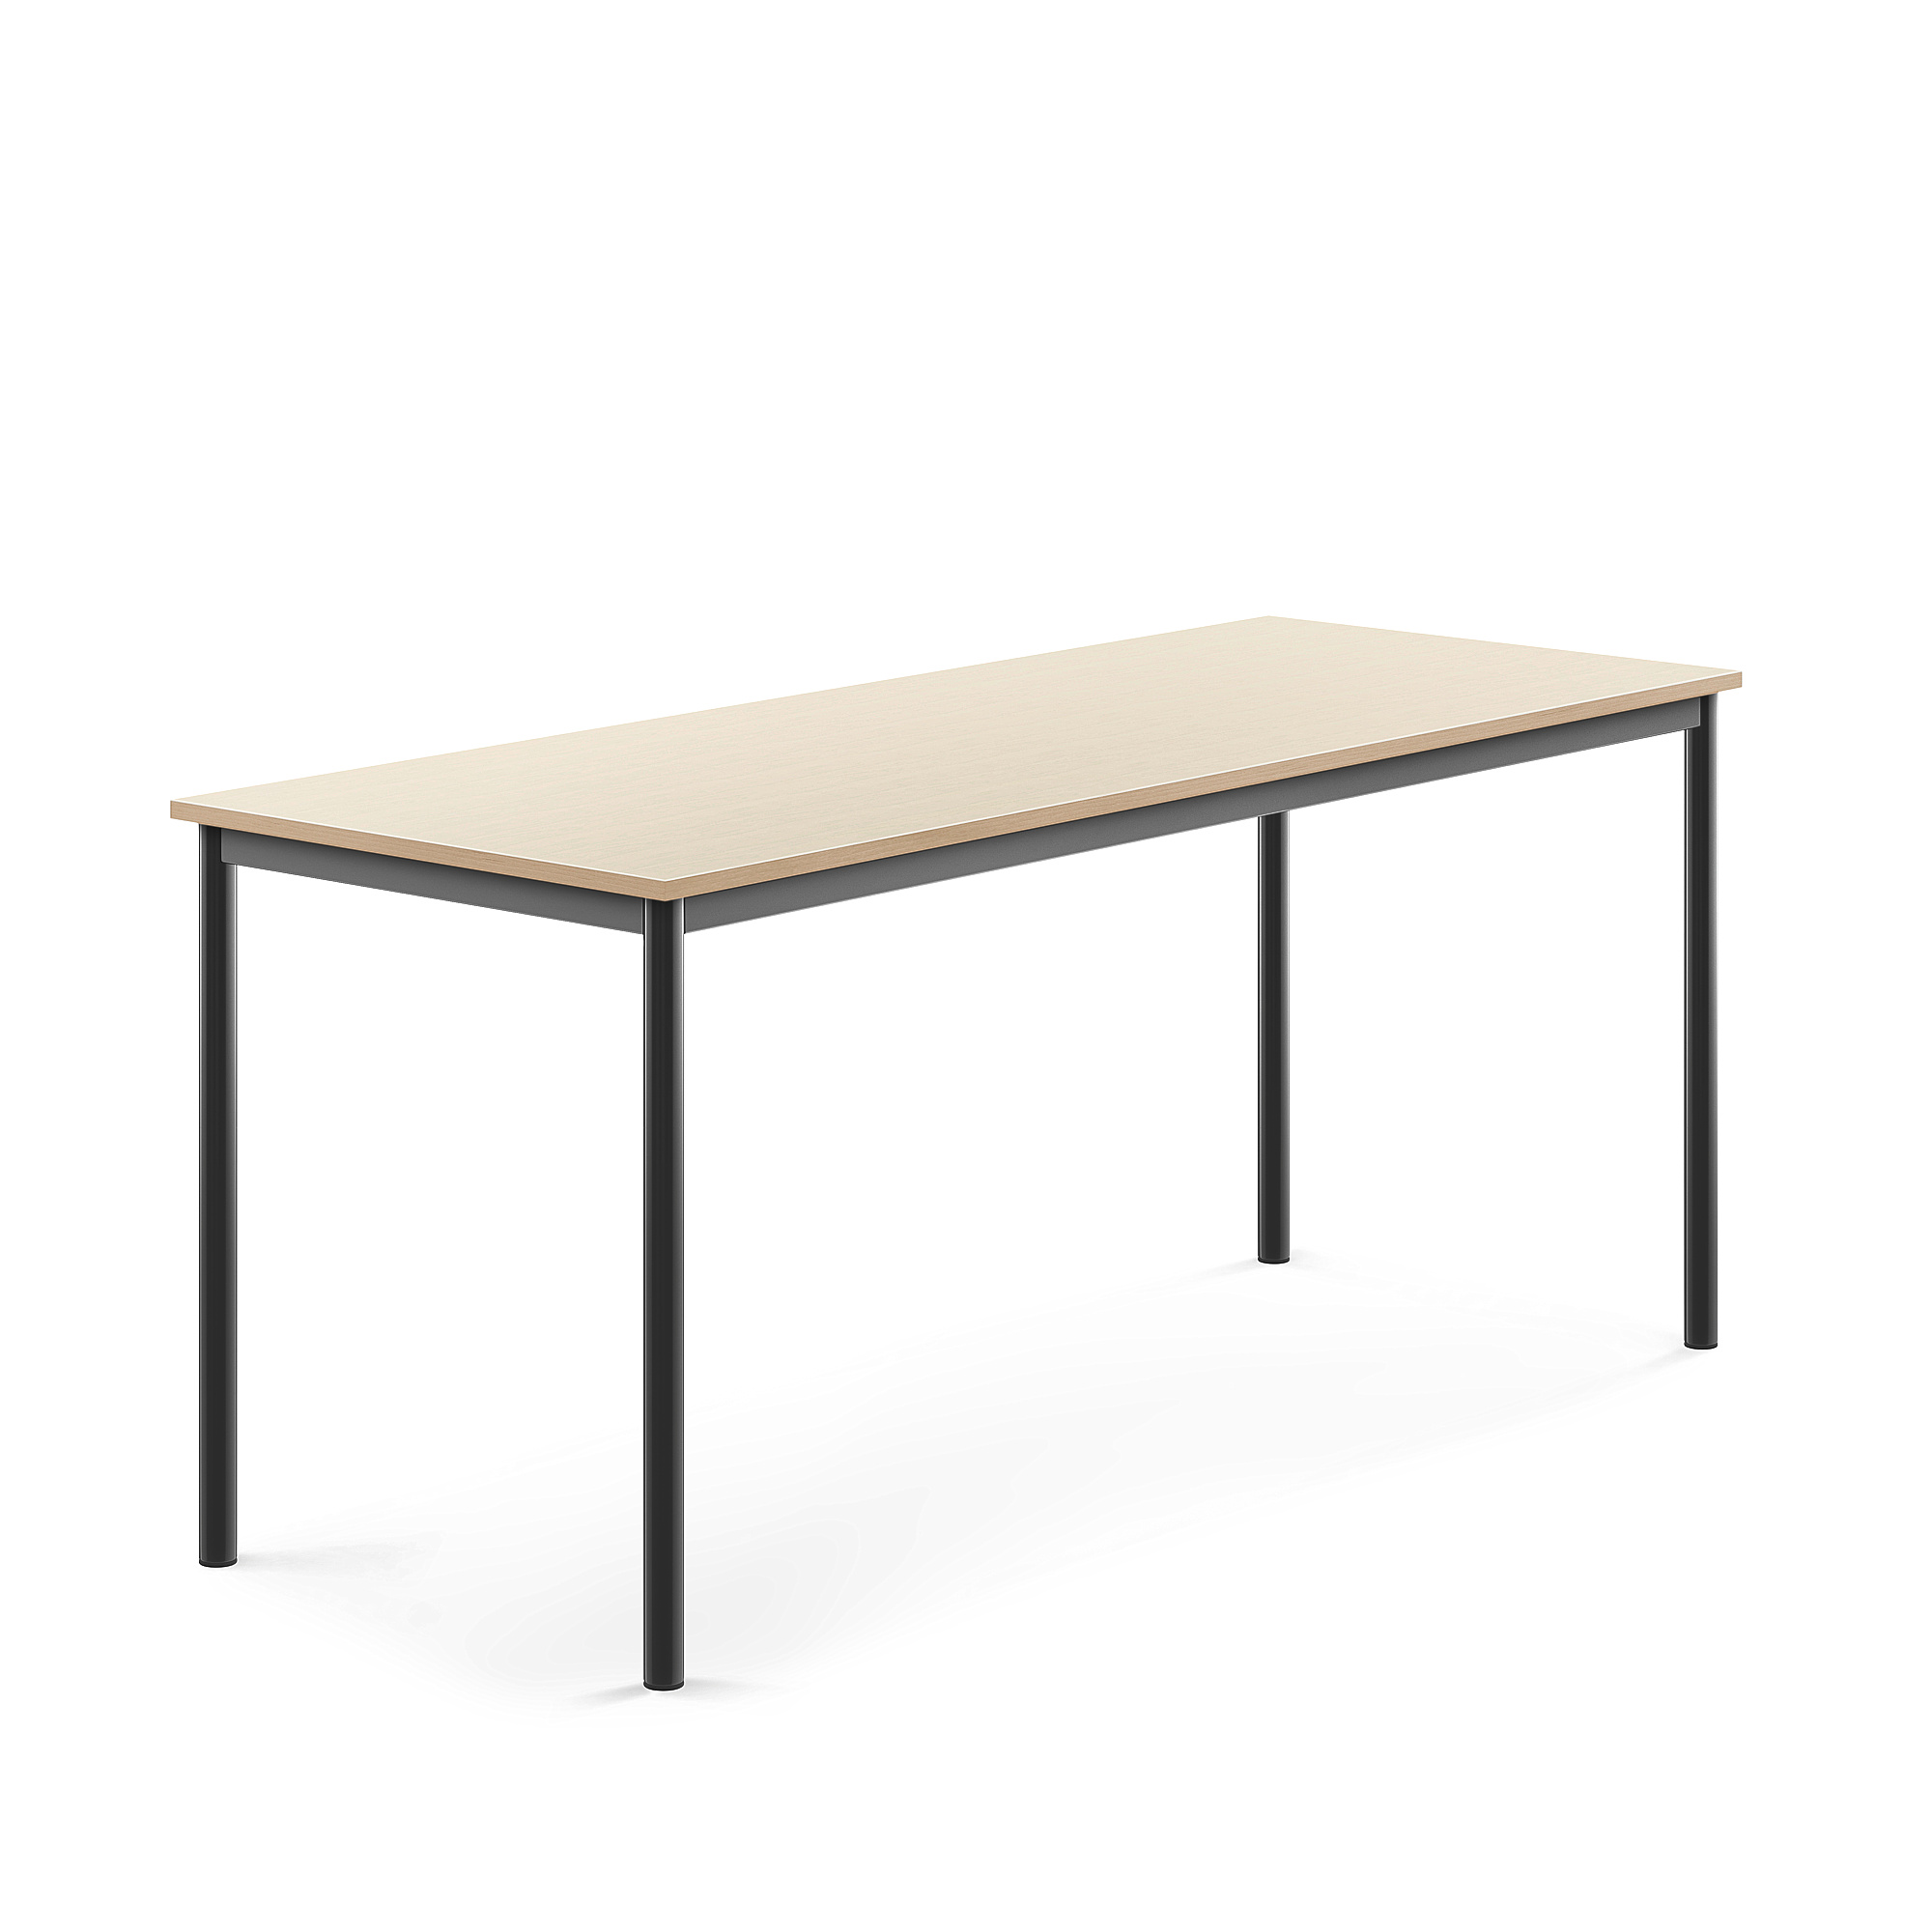 Stůl BORÅS, 1800x700x760 mm, antracitově šedé nohy, HPL deska, bříza